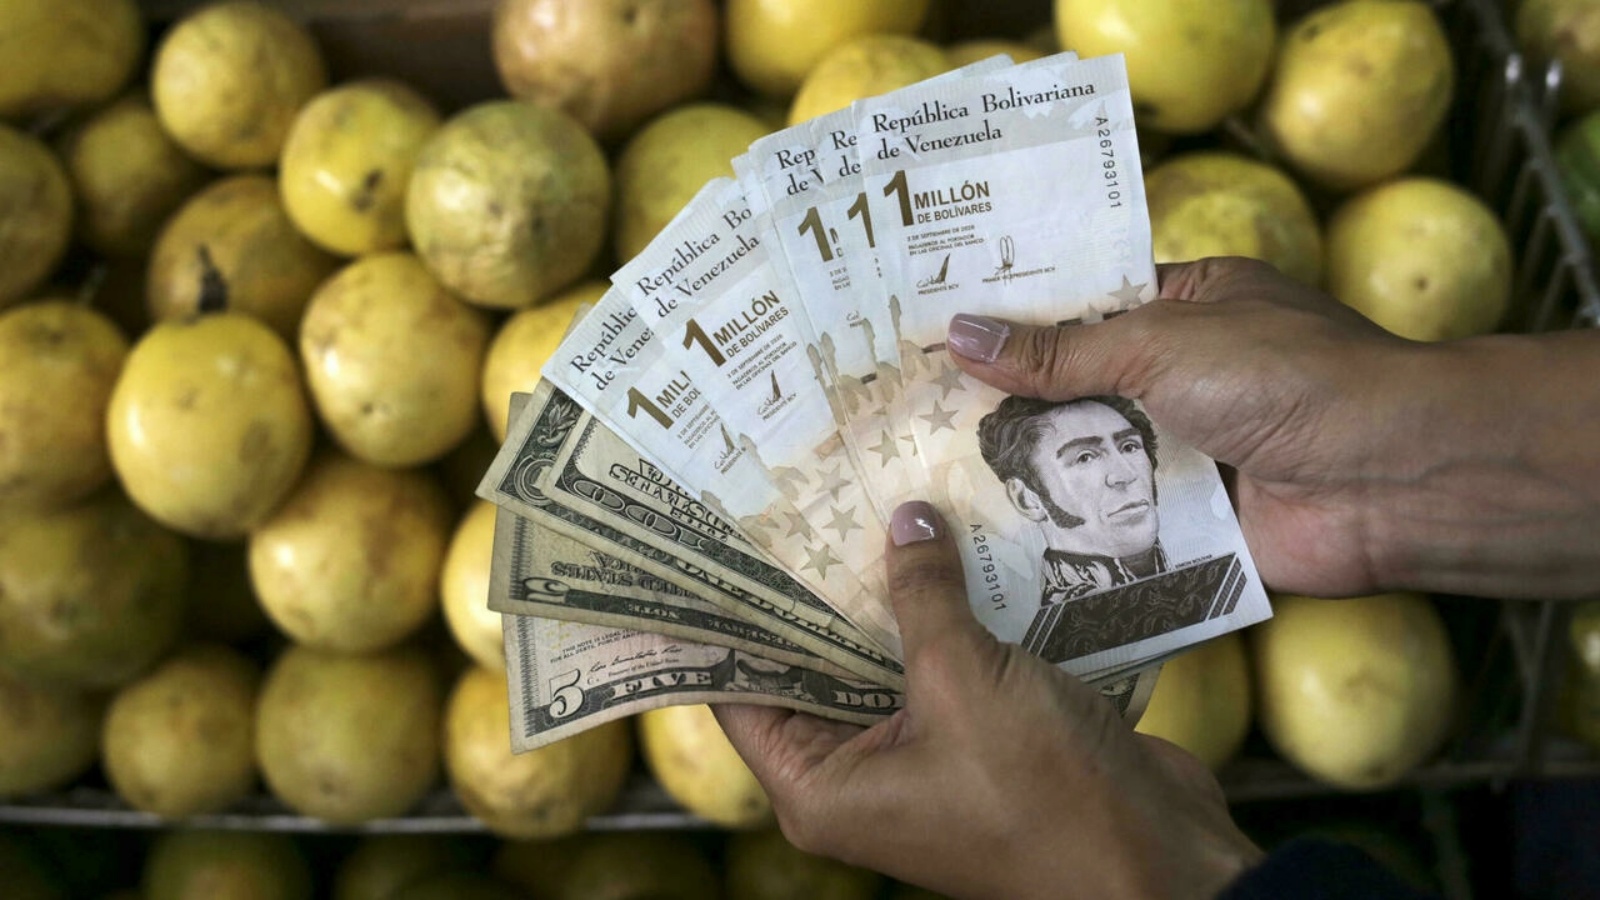 الدولار الأميركي حل إلى حد كبير محل البوليفار الفنزويلي باعتباره العملة الأكثر استخدامًا في فنزويلا